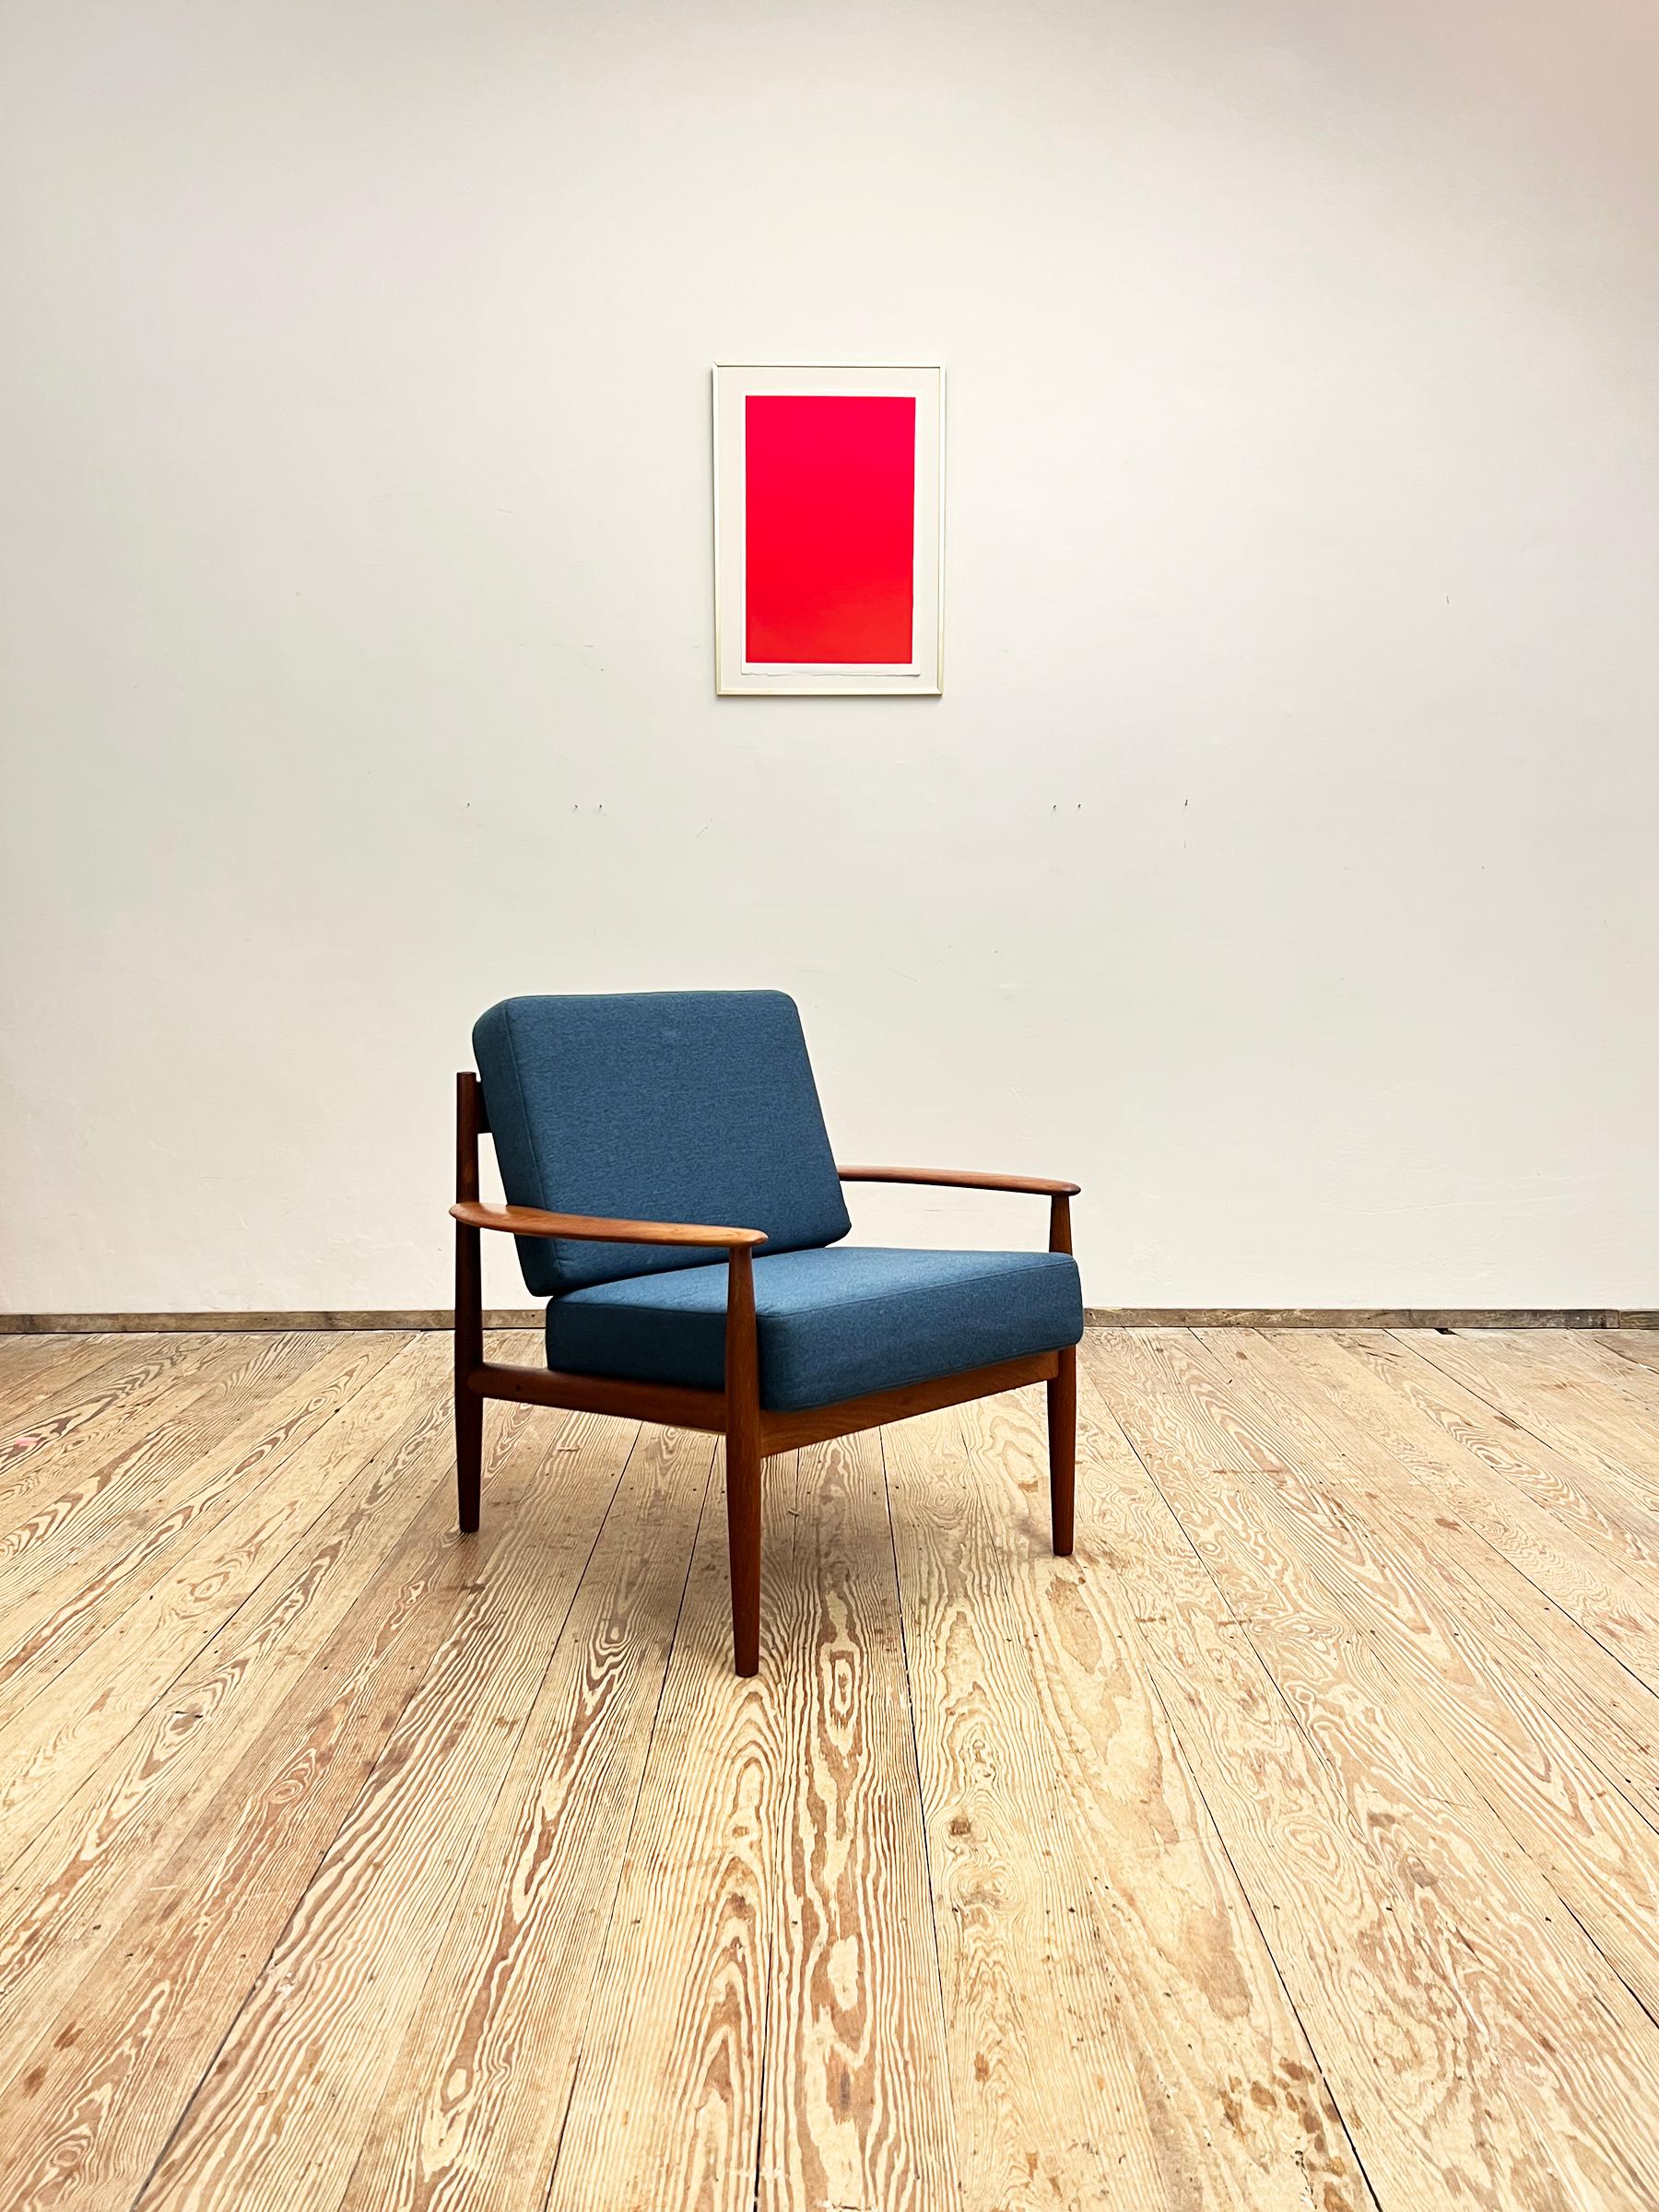 Abmessungen: 73 x 75 x 77 cm (Breite x Höhe x Tiefe)

Dieser schöne Loungesessel wurde in den 1950er Jahren von Grete Jalk für France and Son in Dänemark entworfen. Die elegante Form und die fragilen Proportionen machen diesen Sessel zu einem der